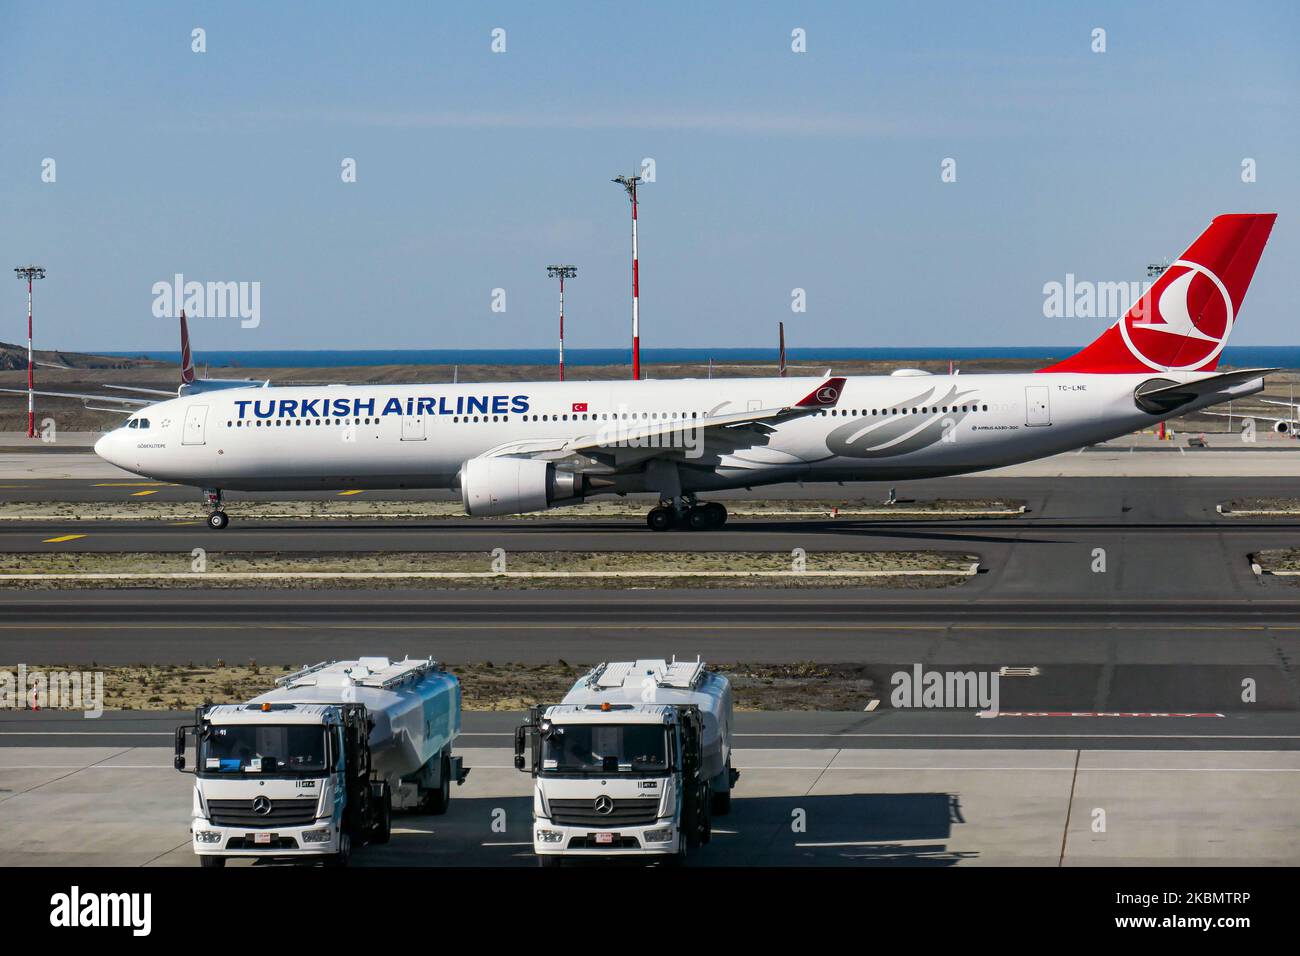 Turkish Airlines Airbus A330 Großraumflugzeuge, wie sie tagsüber auf dem  Istanbul New Airport rollten - IST LTFM in der Türkei. Das  Langstreckenflugzeug A330-303 oder A333 hat die Zulassung TC-LNE, 2x  GE-Triebwerke und